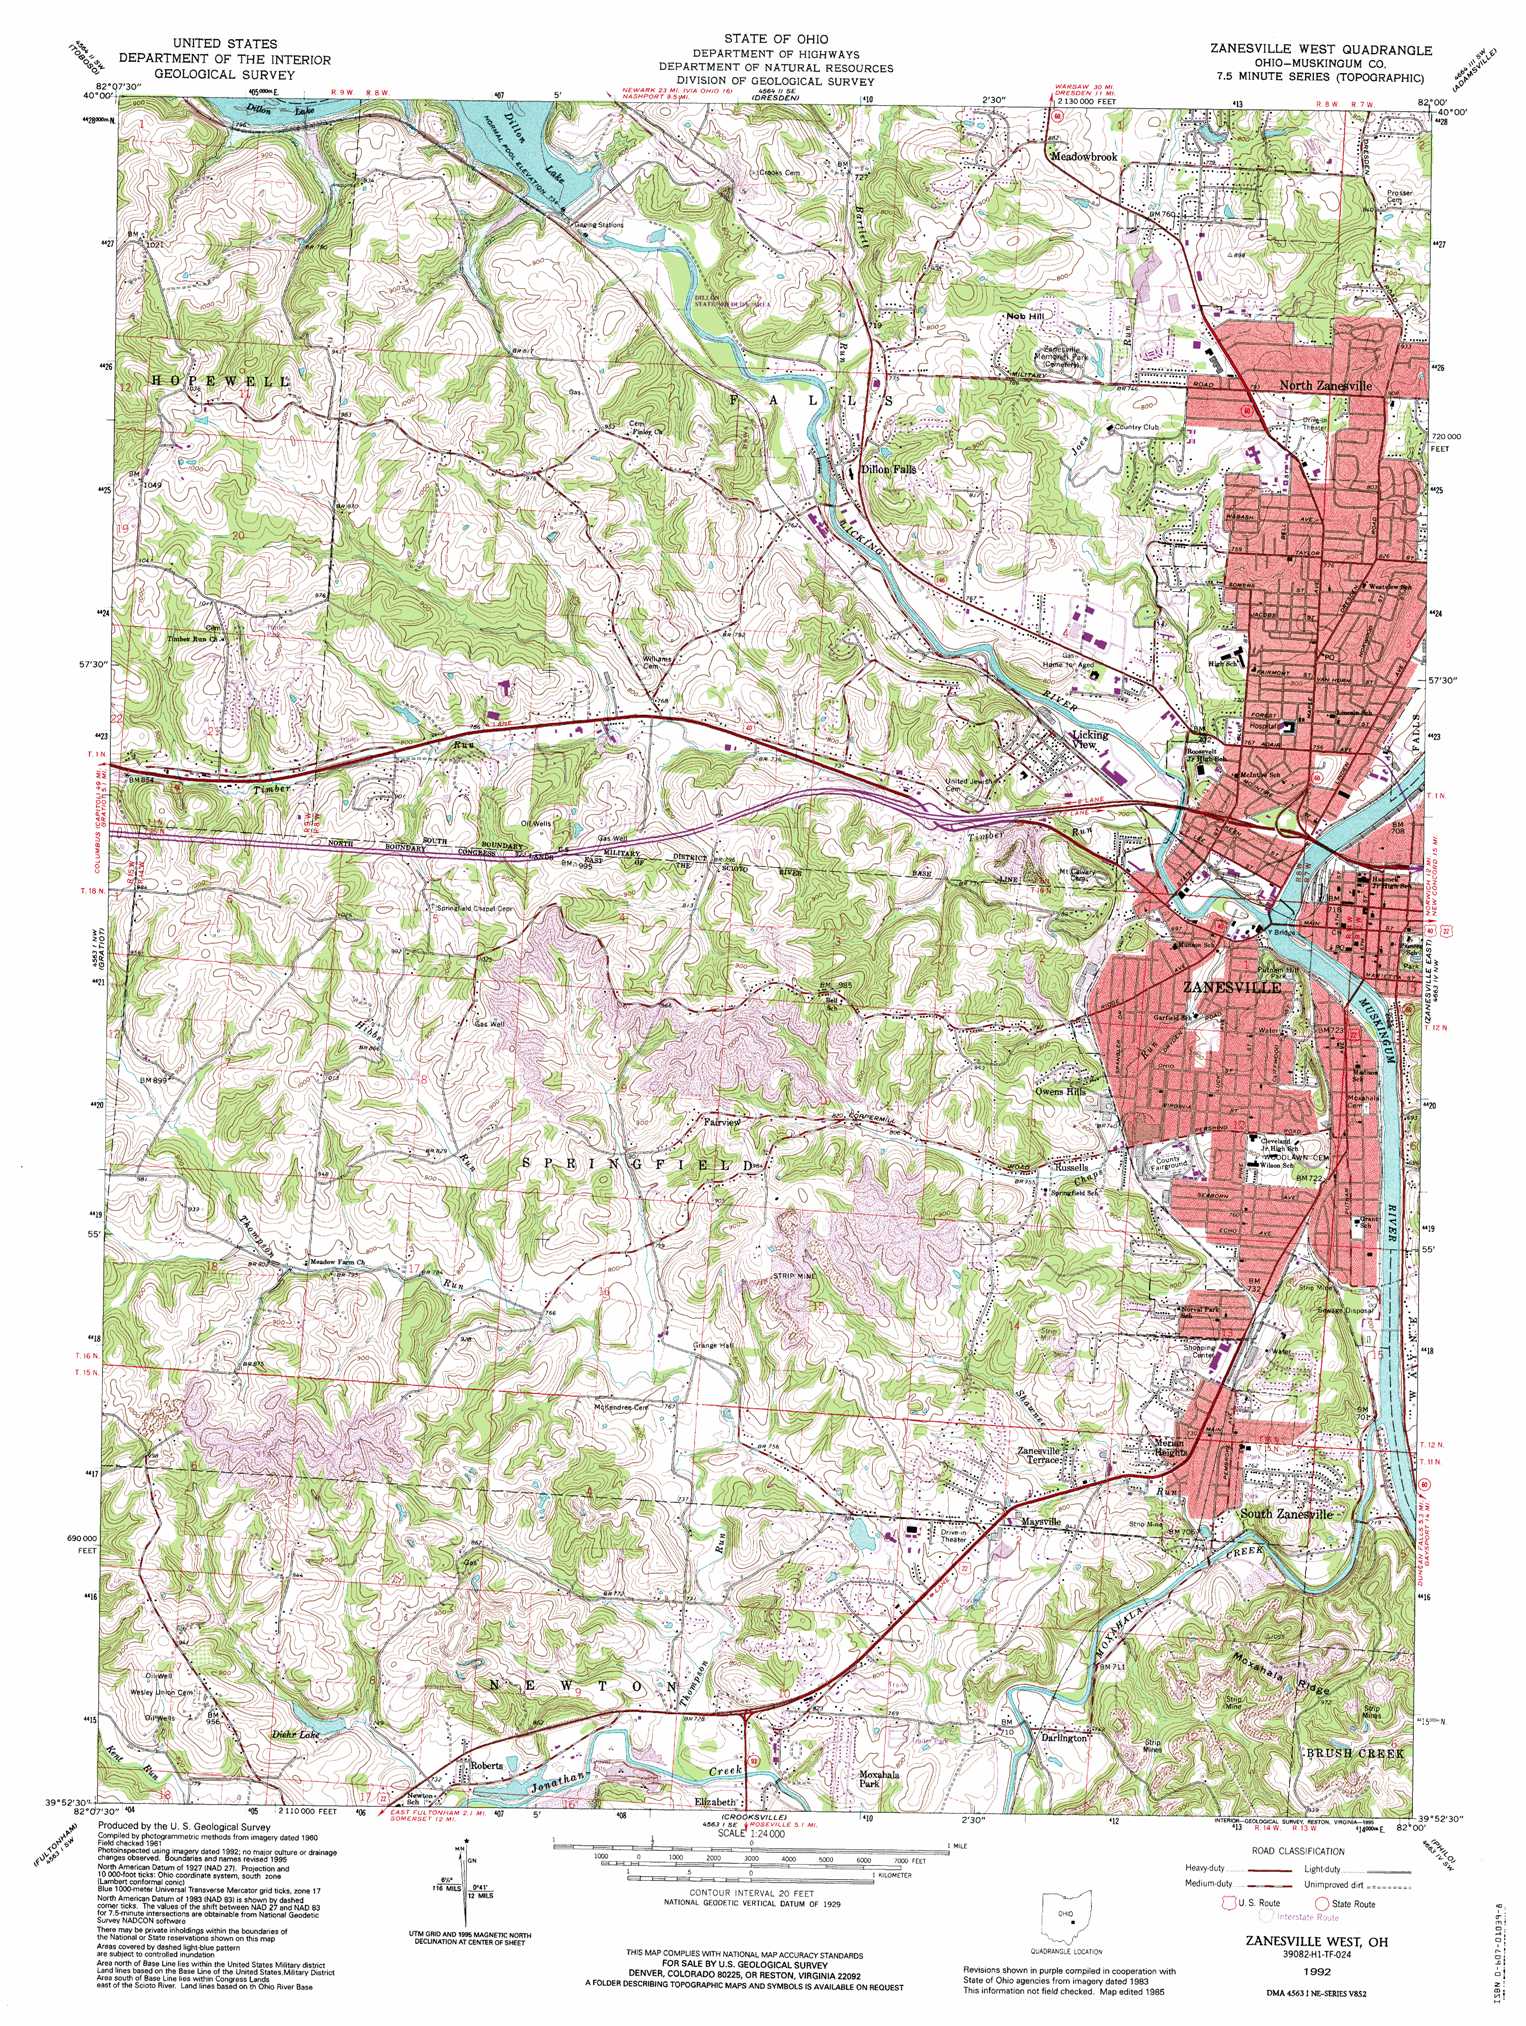 Zanesville West topographic map 1:24,000 scale, Ohio